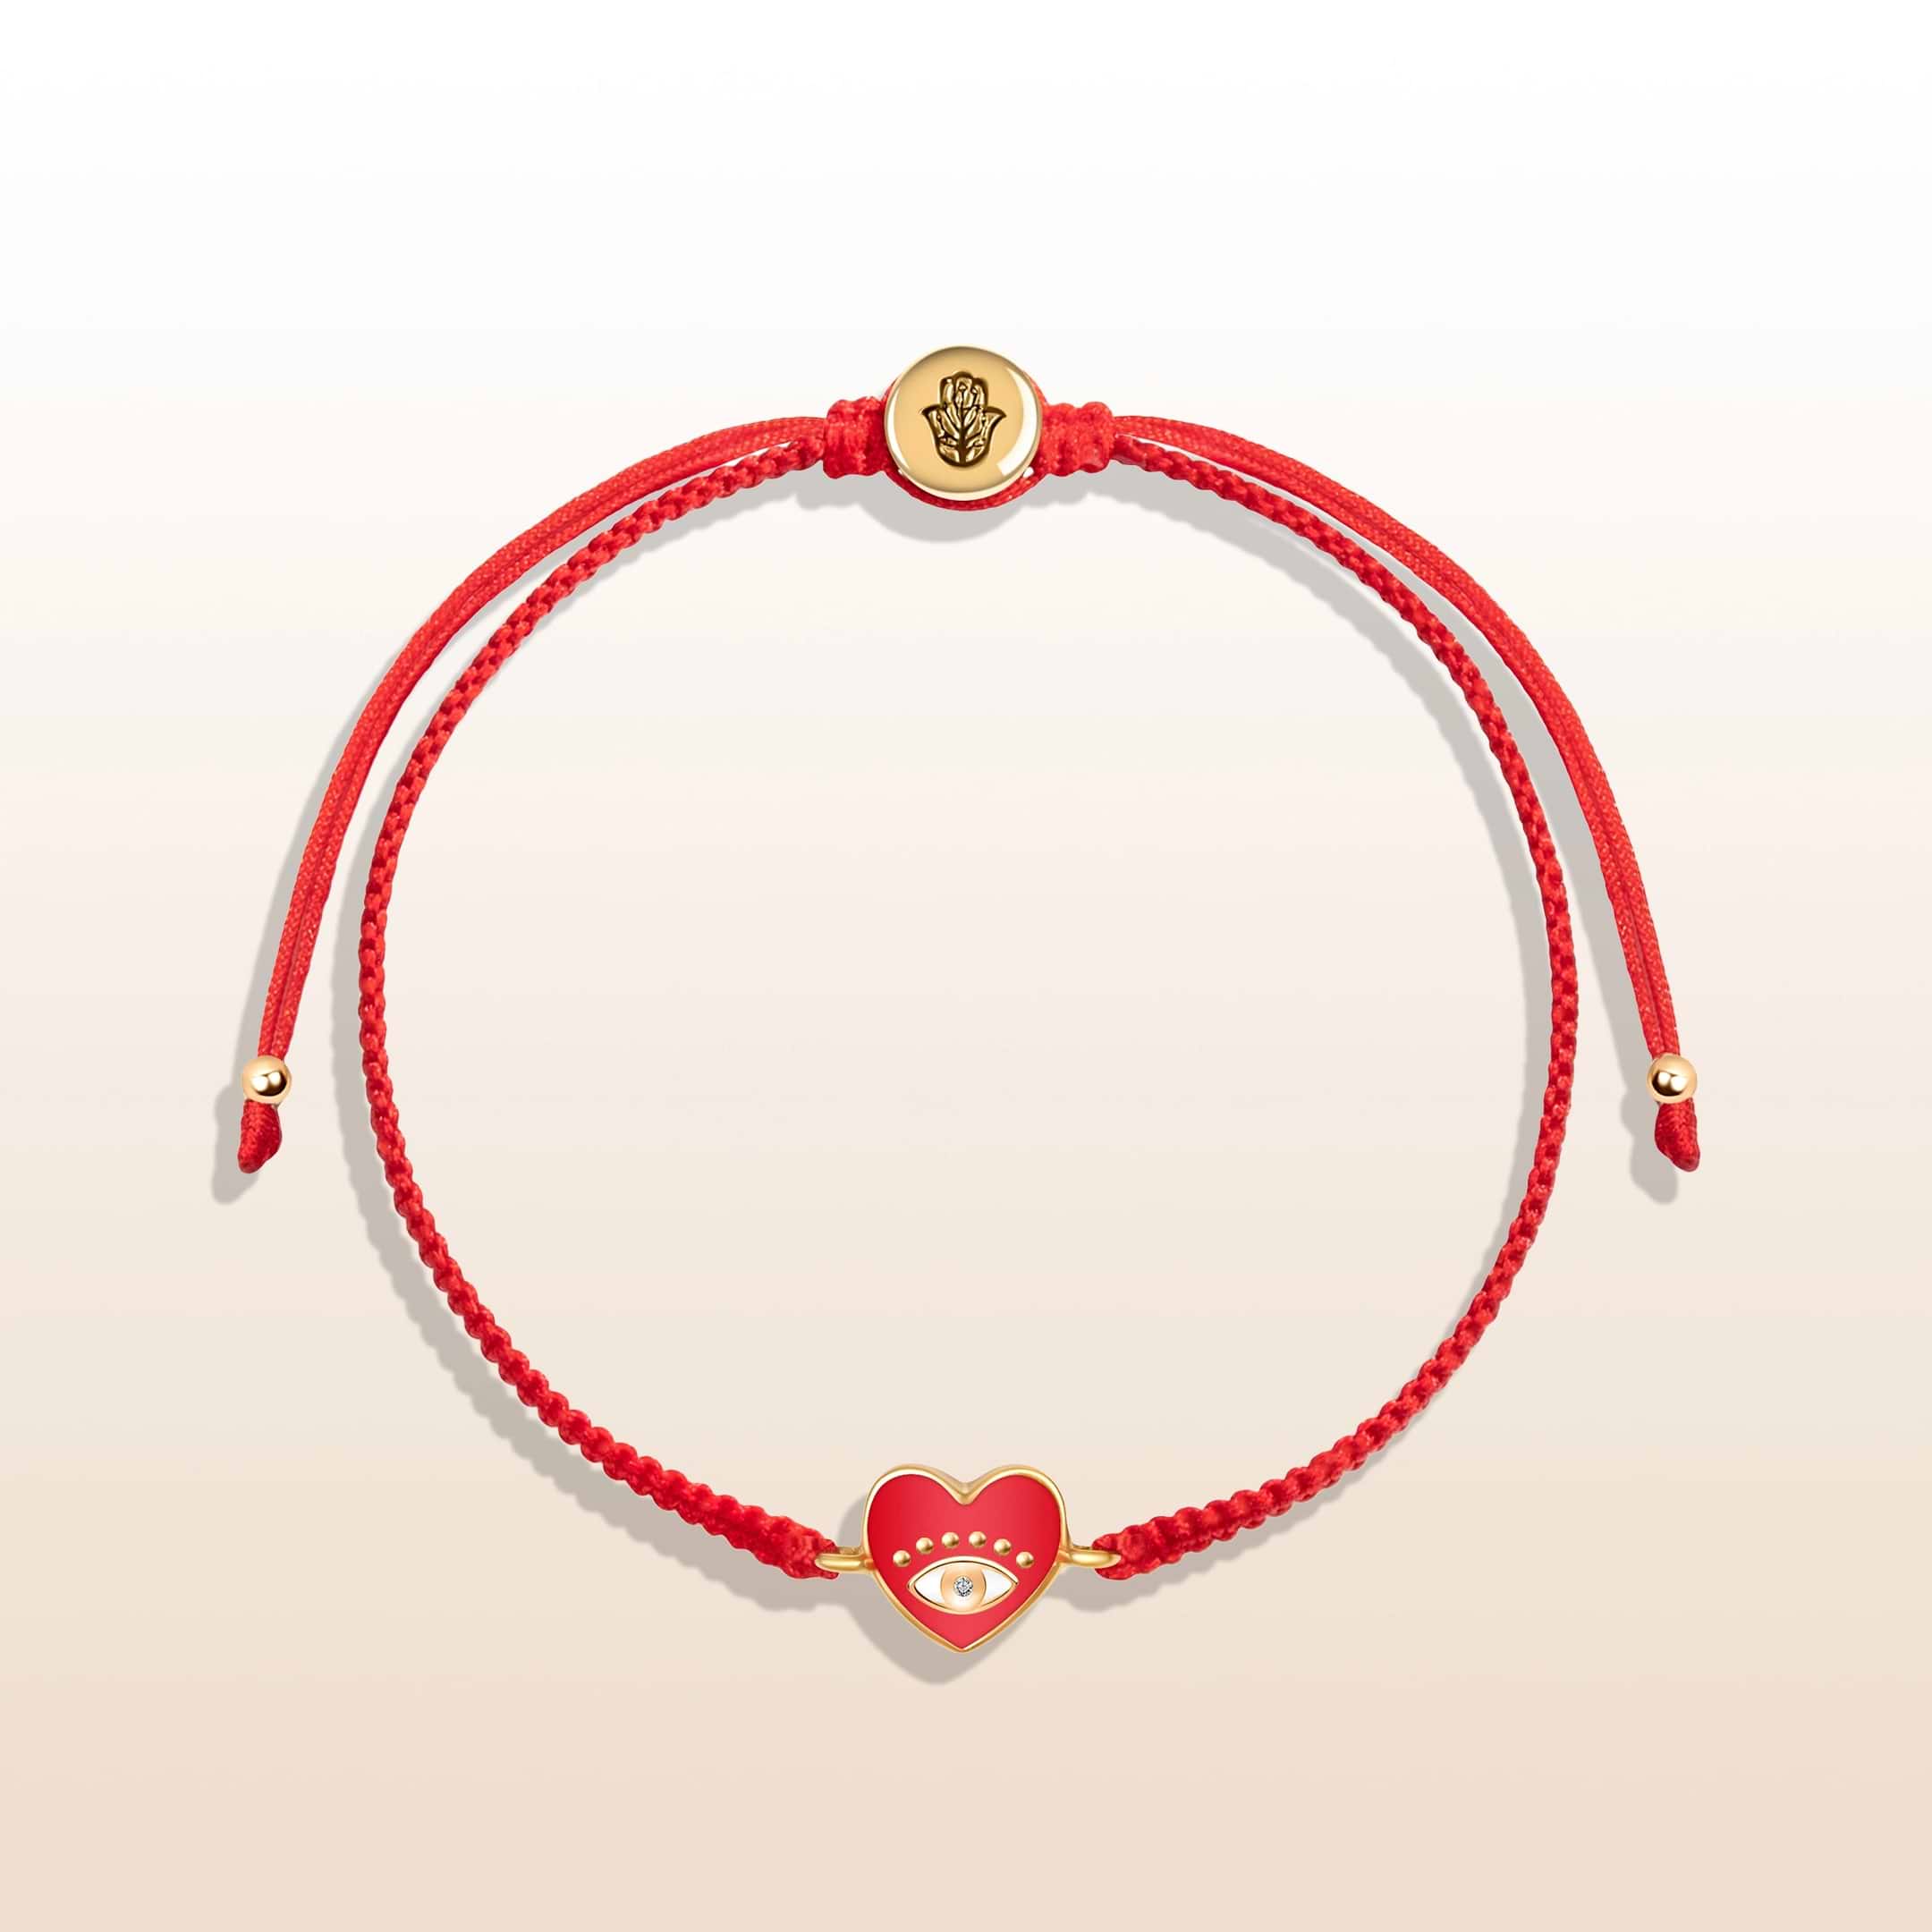 Devoted to Love - Evil Eye Heart Charm Red String Bracelet